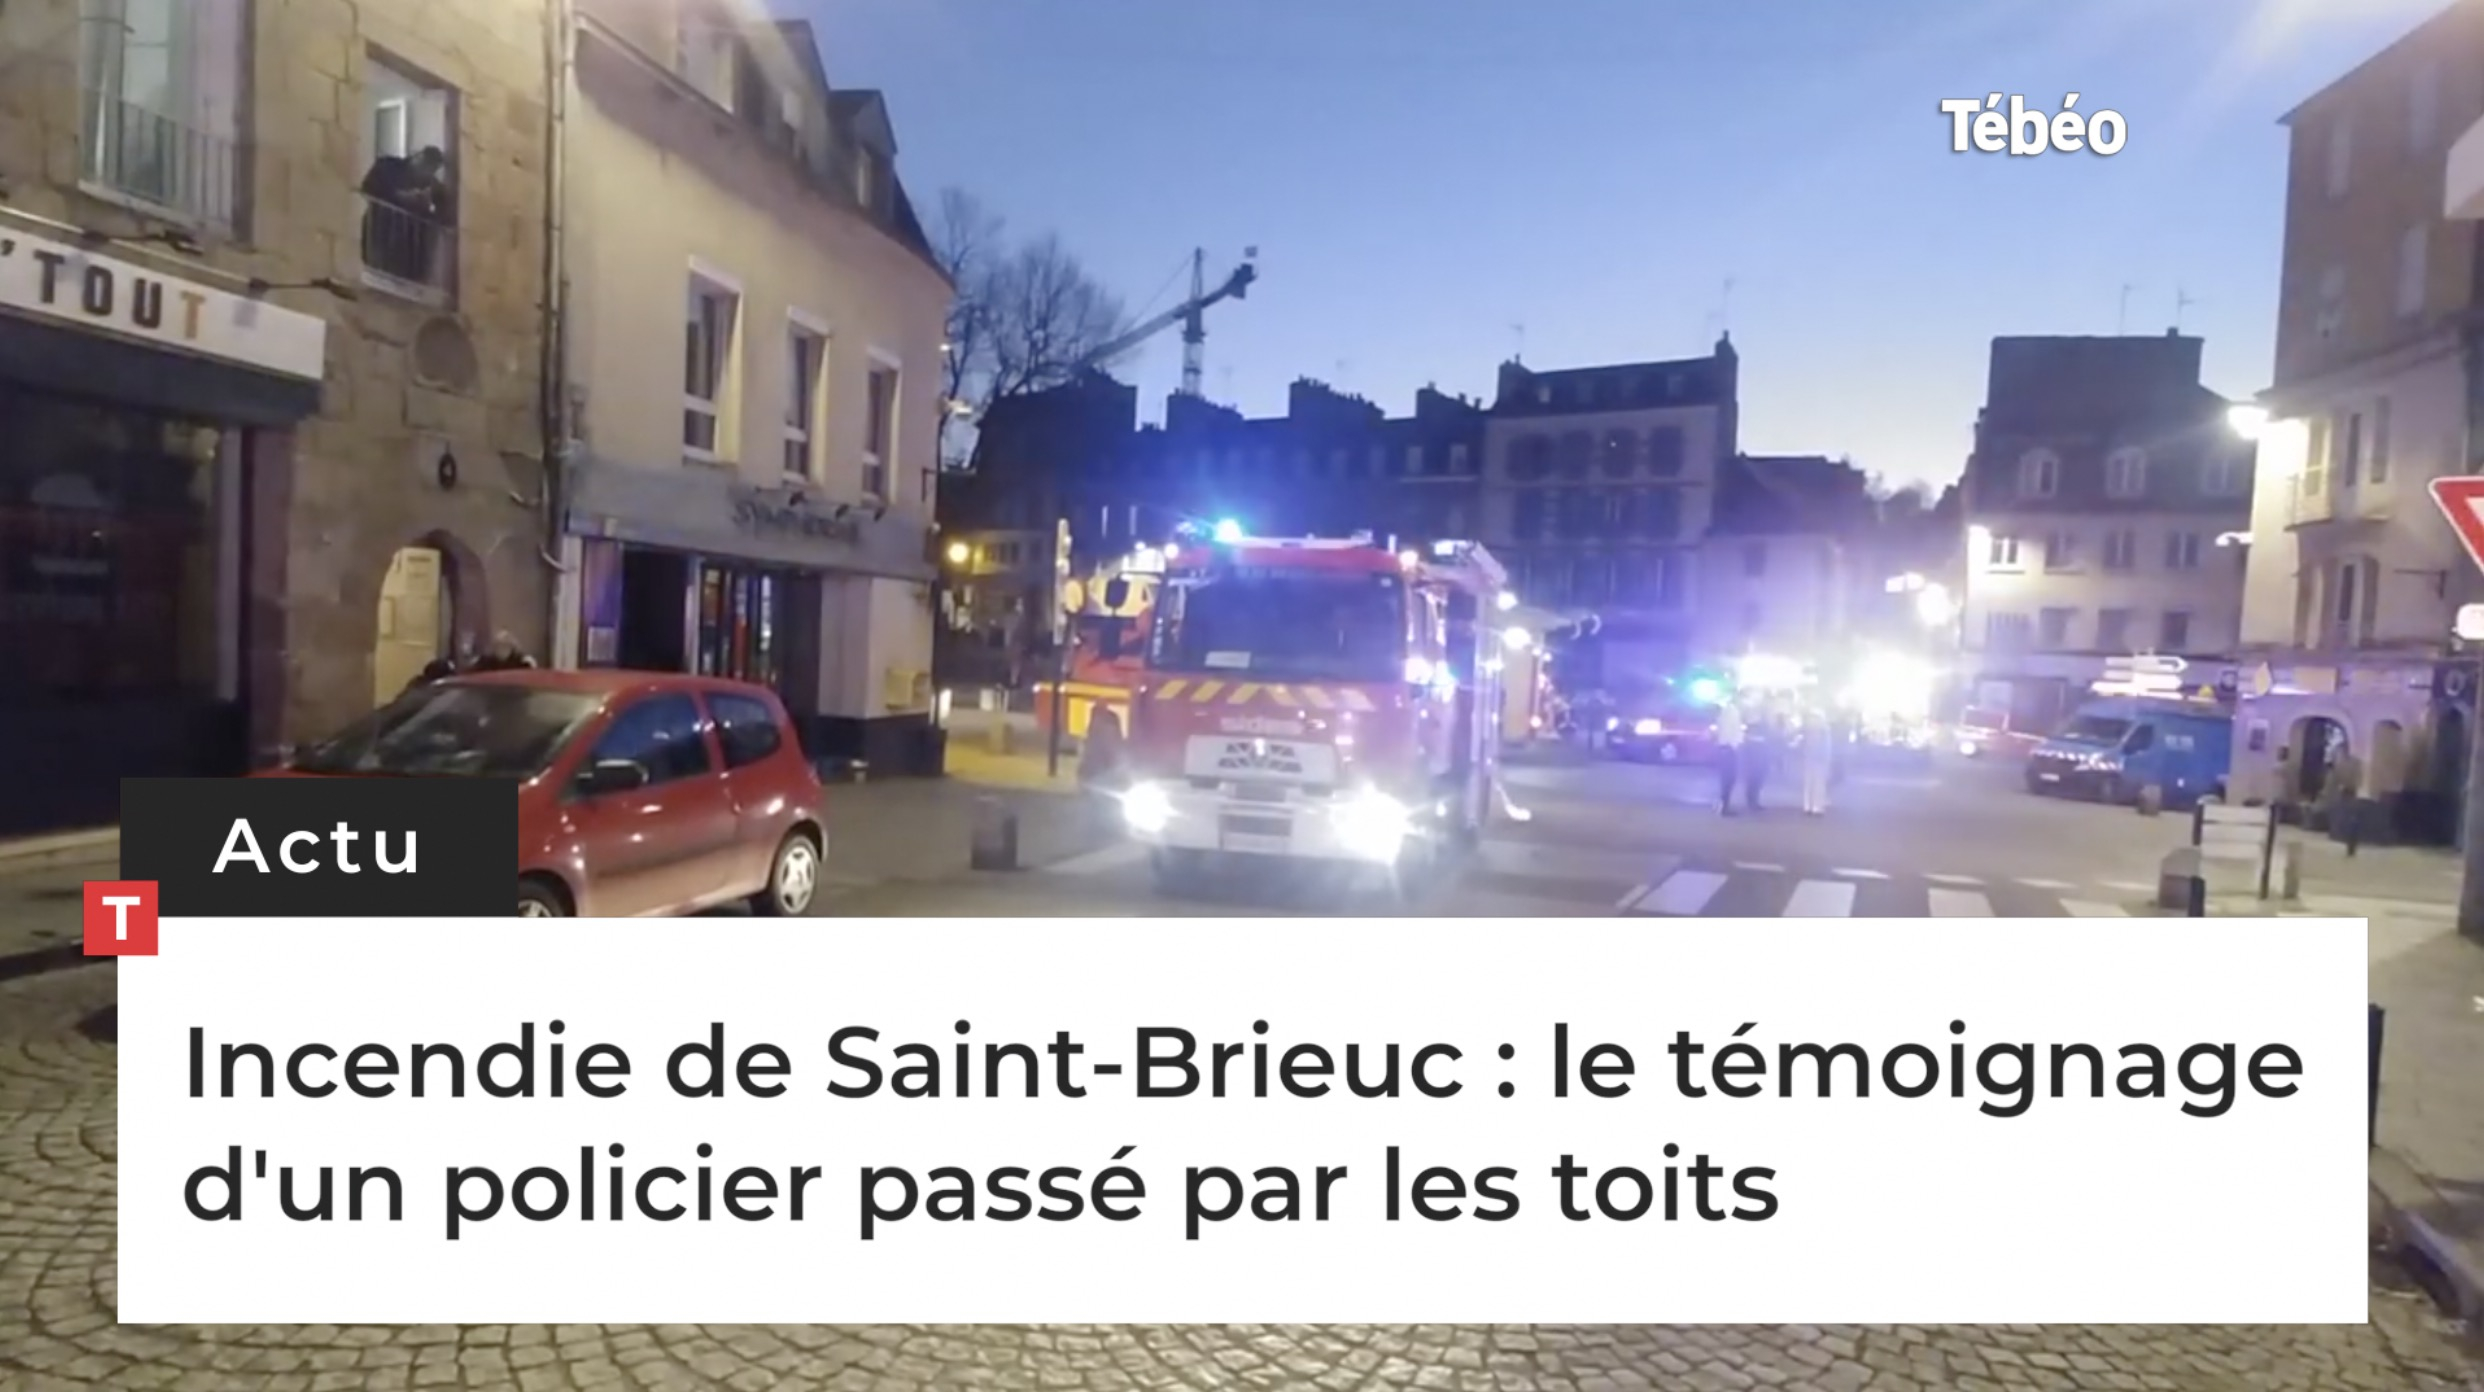 Incendie de Saint-Brieuc : le témoignage d'un policier passé par les toits (Le Télégramme)